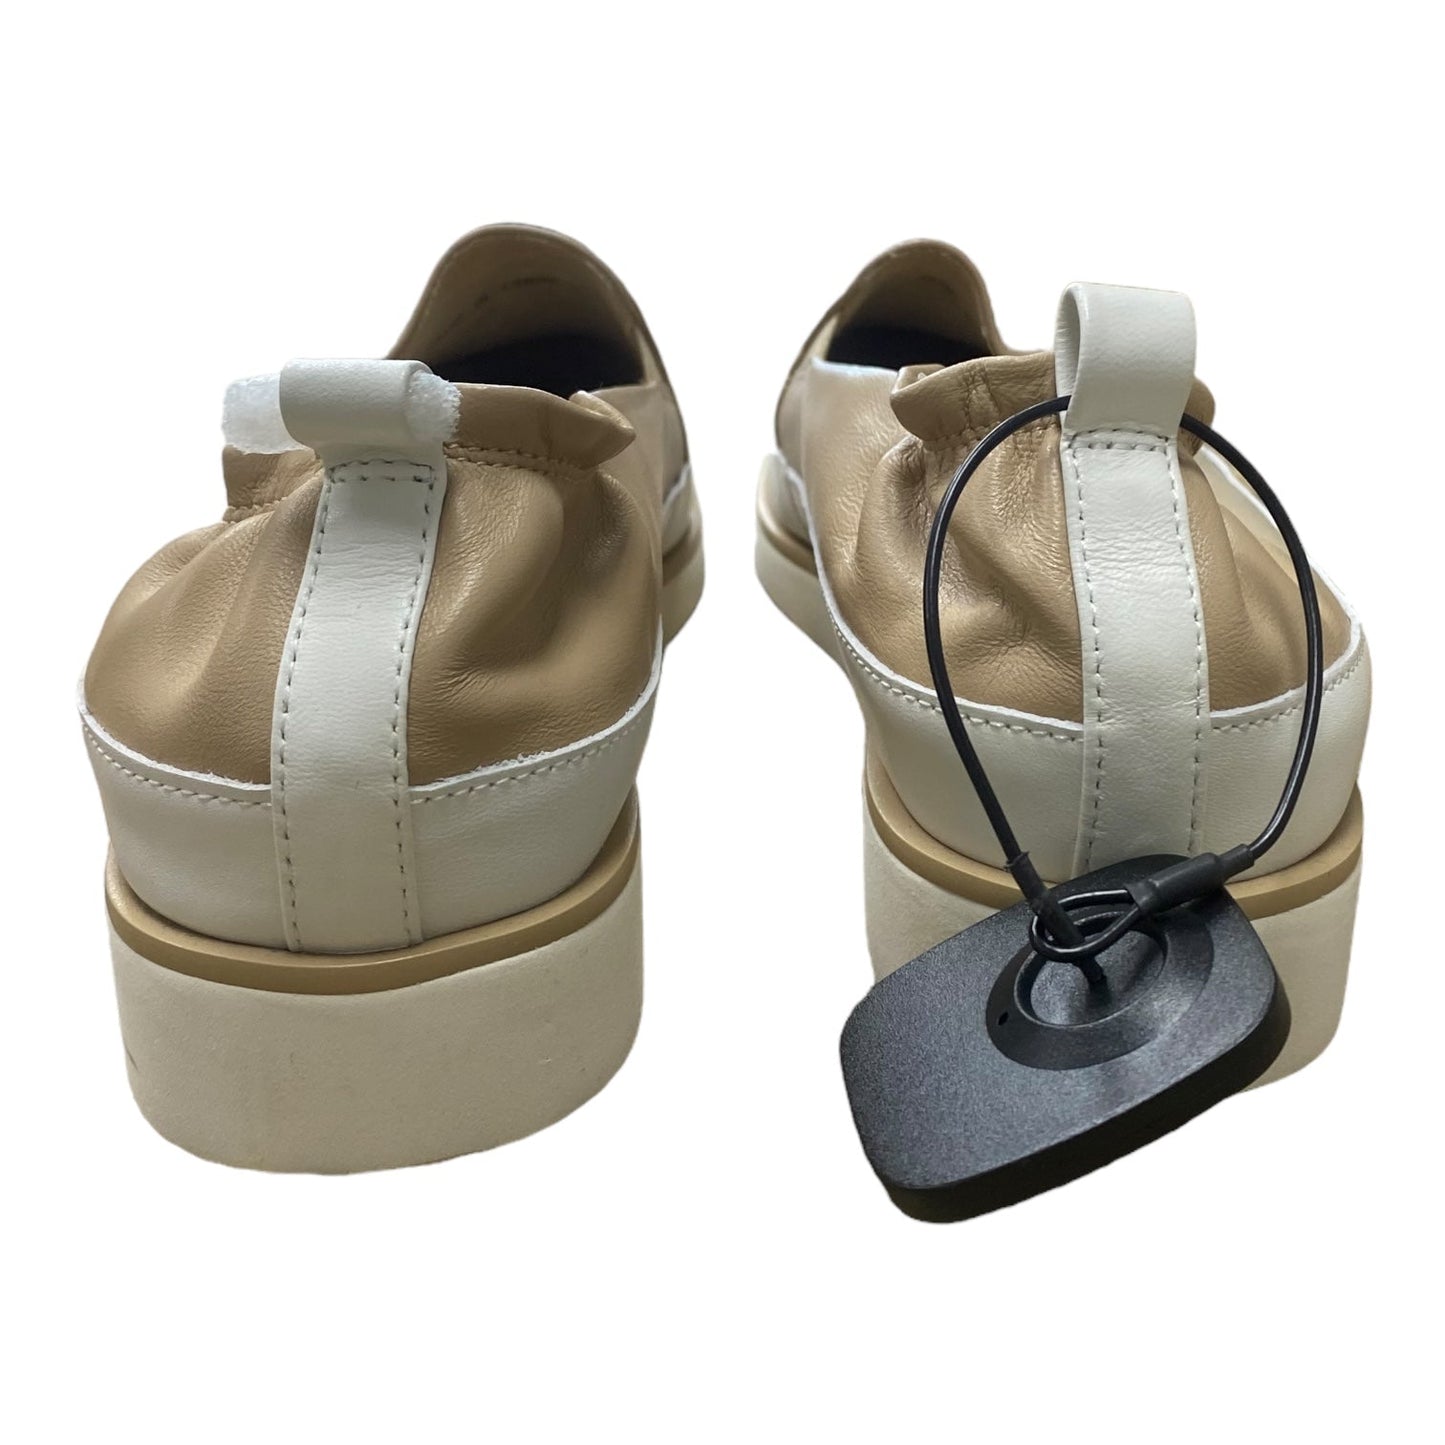 Tan & White Shoes Flats Vaneli, Size 9.5